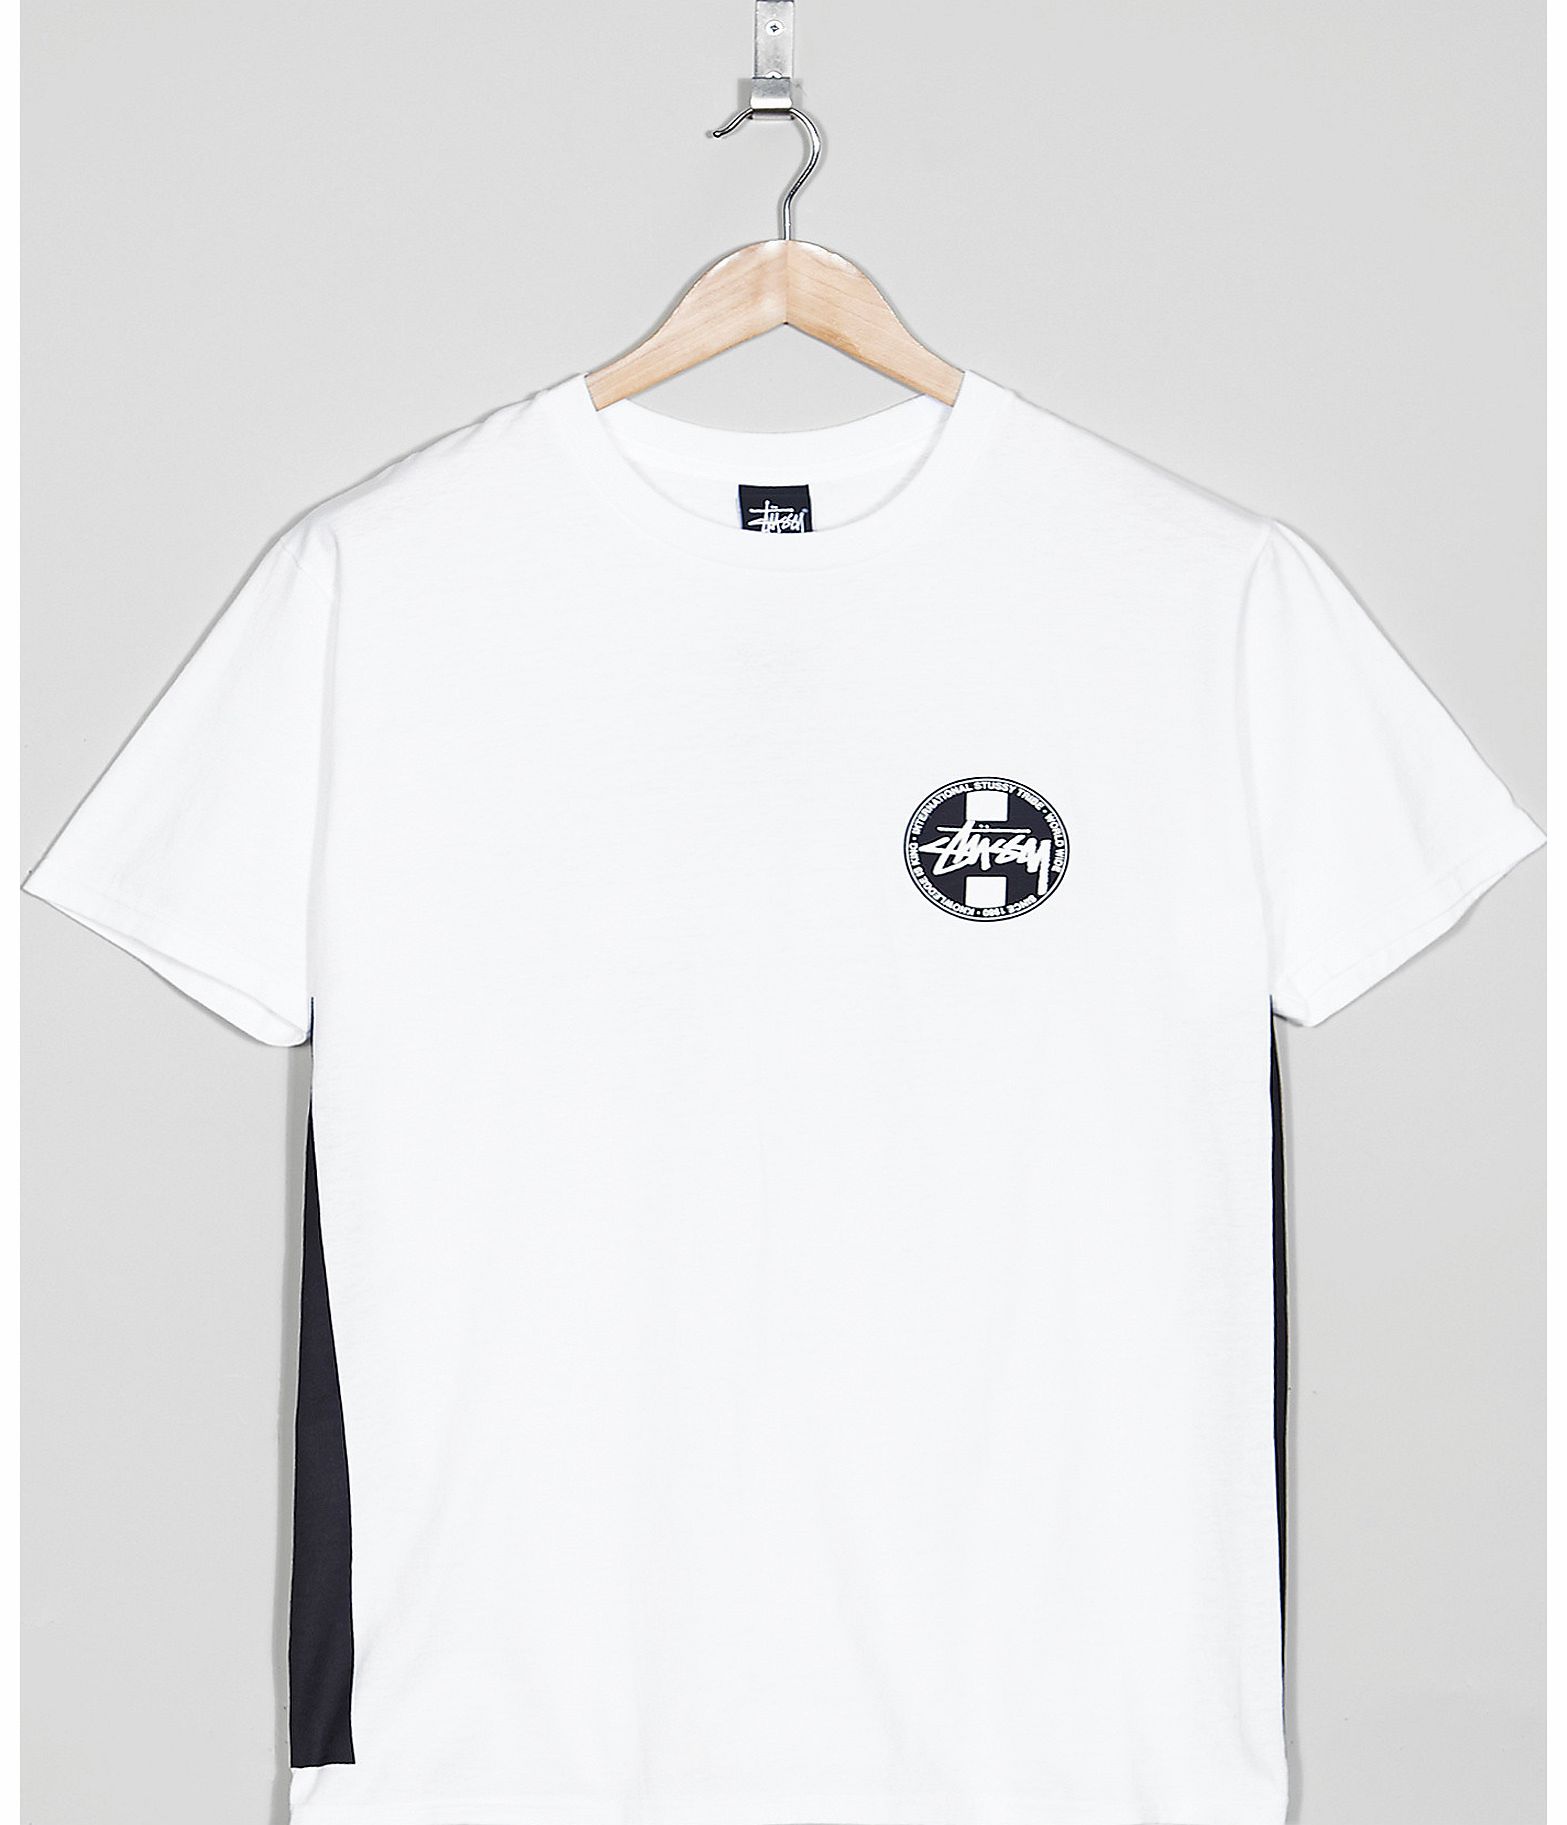 Worldwide Dot T-Shirt